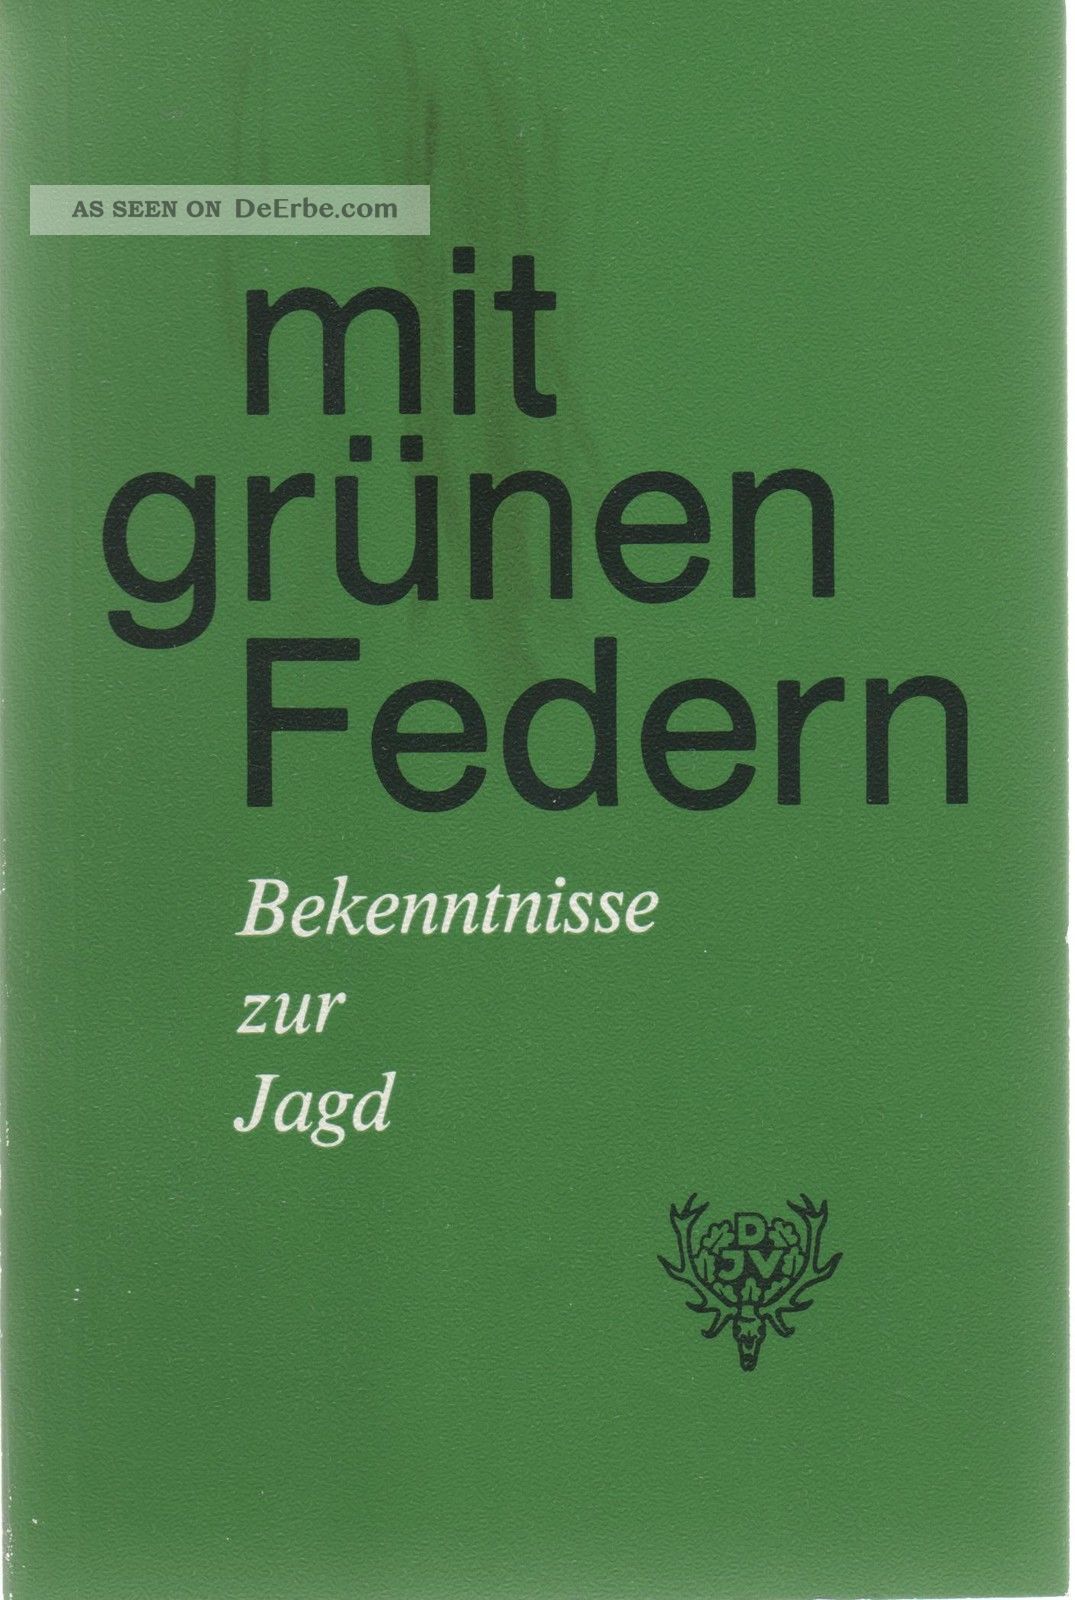 Djv - Taschenbuch Mit GrÜnen Federn Bekenntnisse Zur Jagd 12 Erzählungen 1a Jagd & Fischen Bild